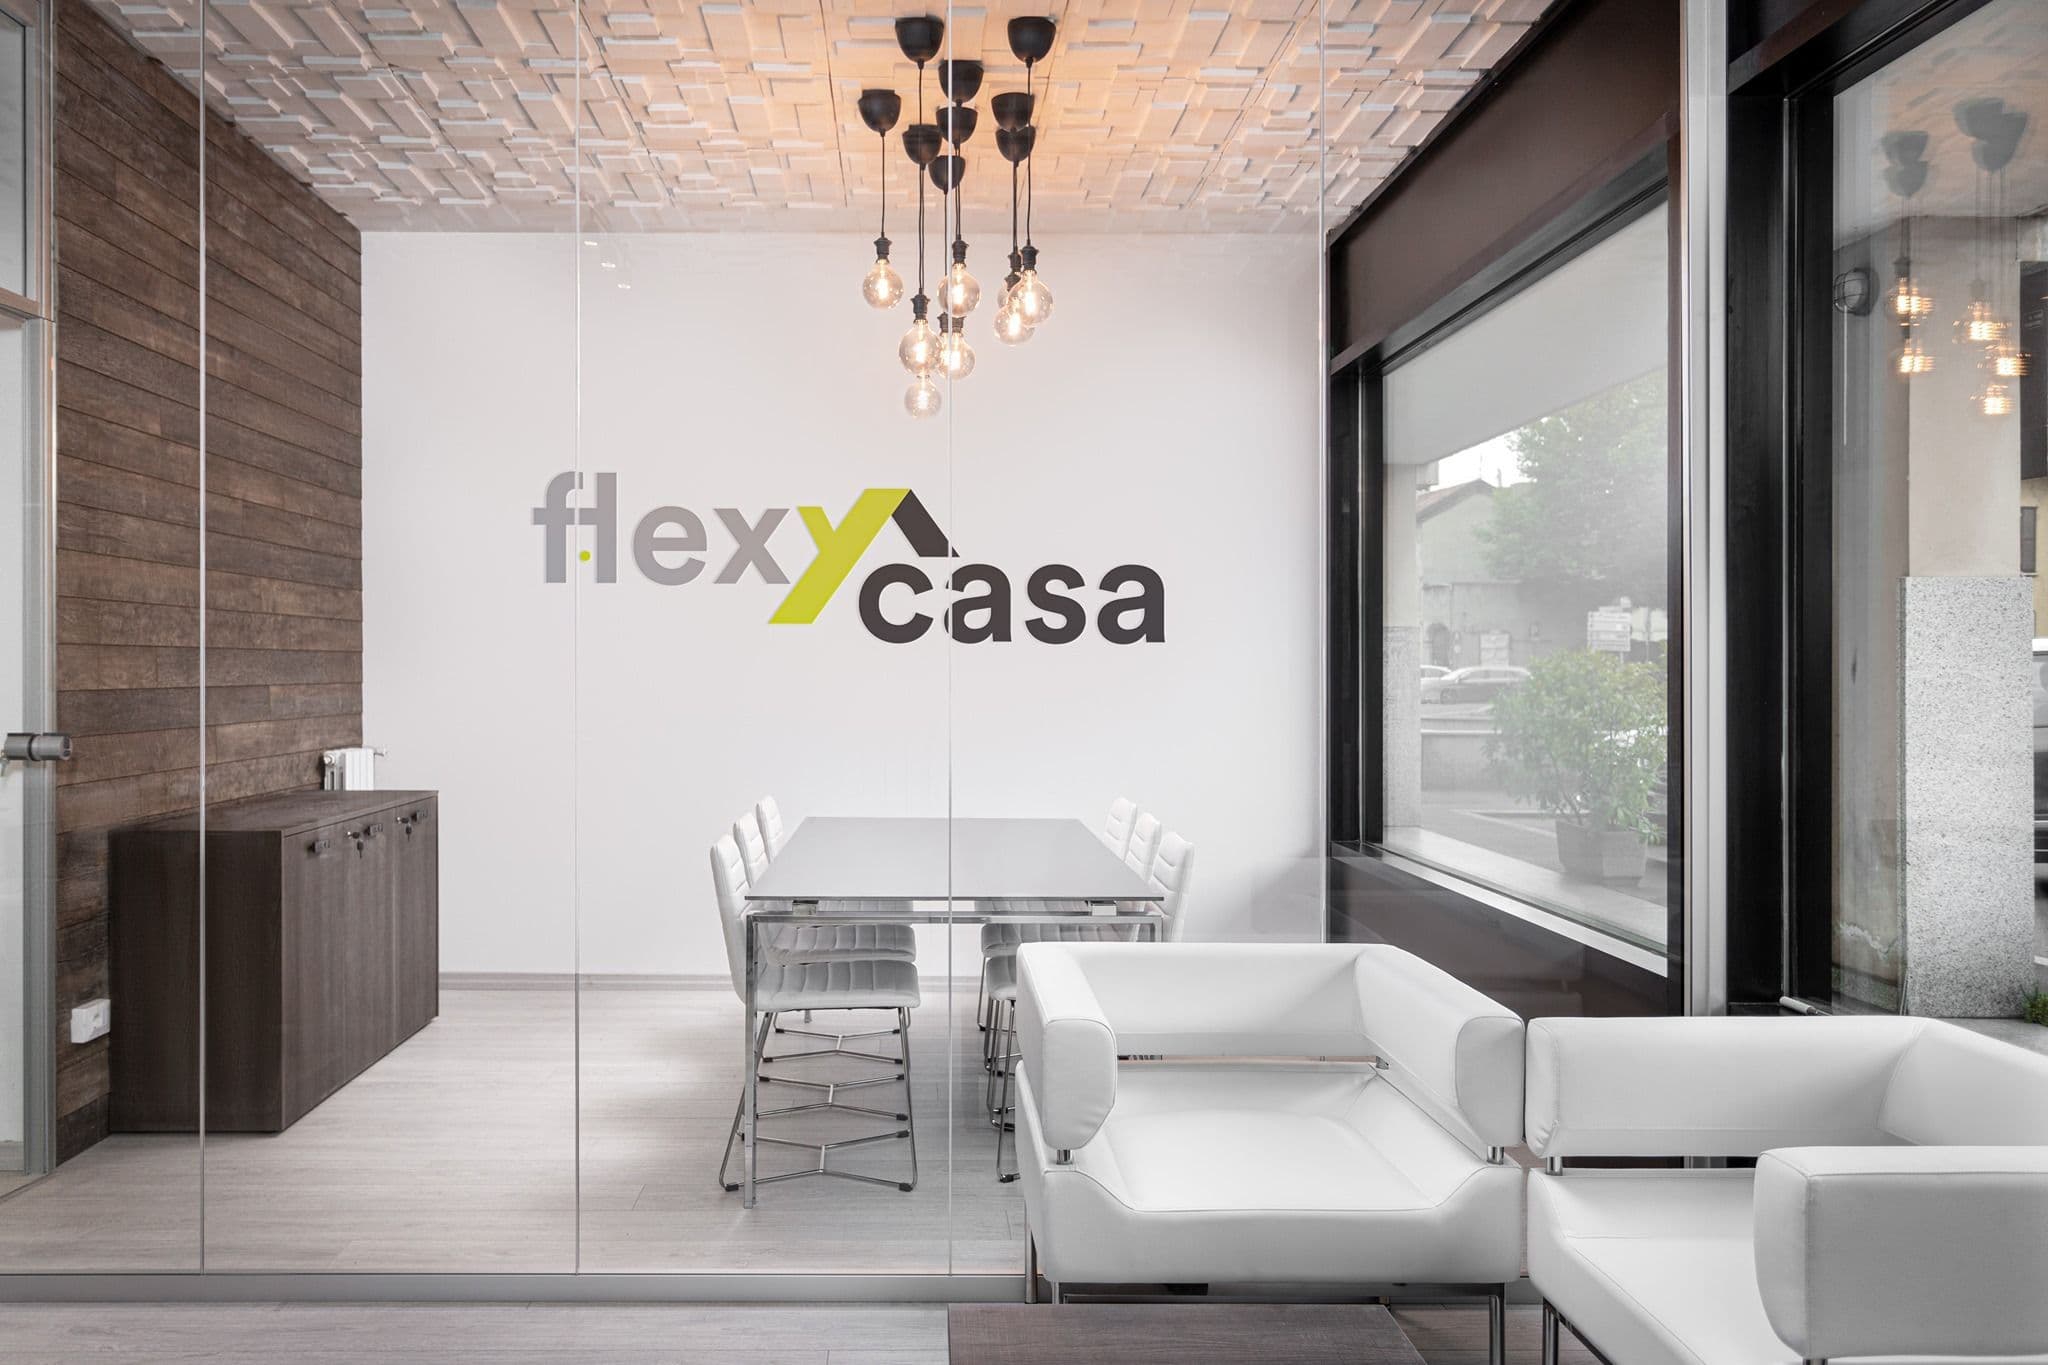 Flexycasa: la nuova startup del mondo proptech